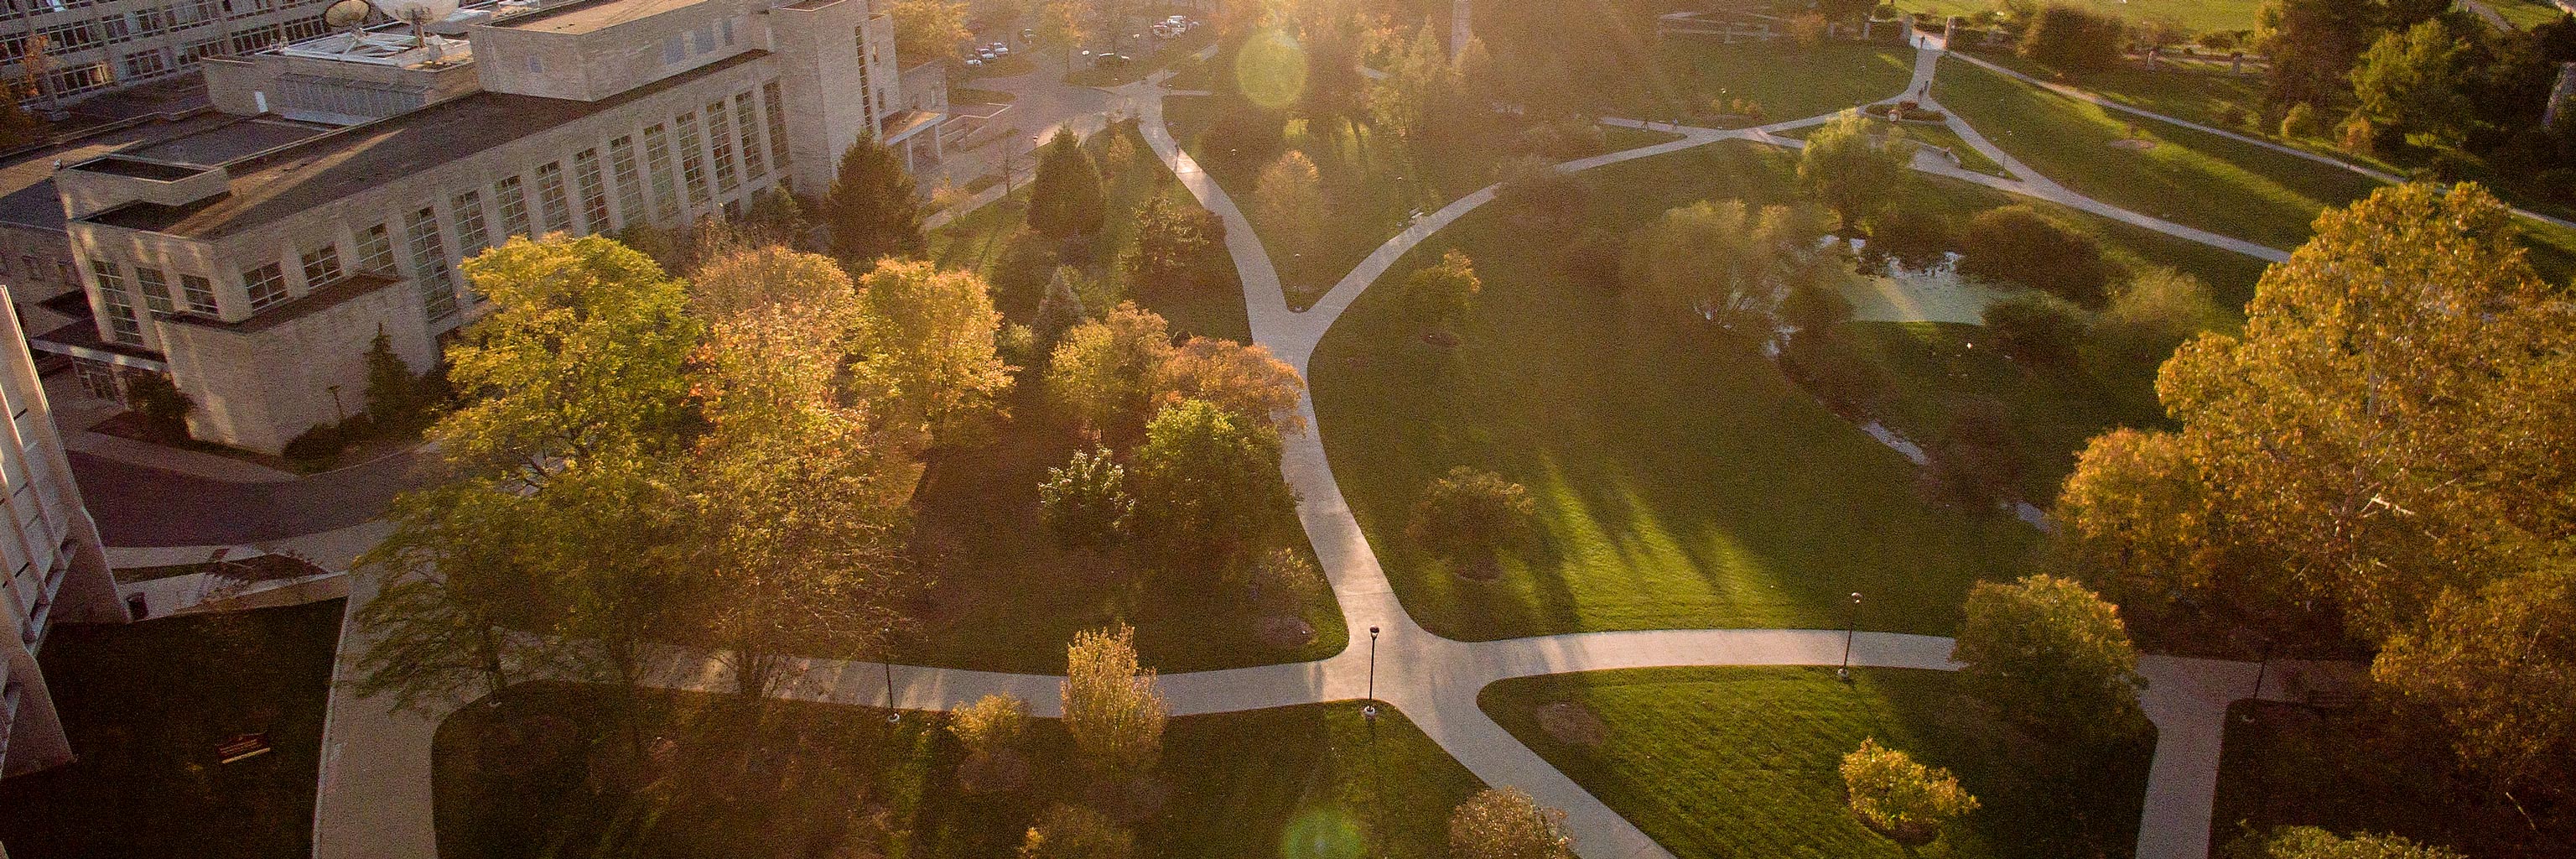 campus walking paths